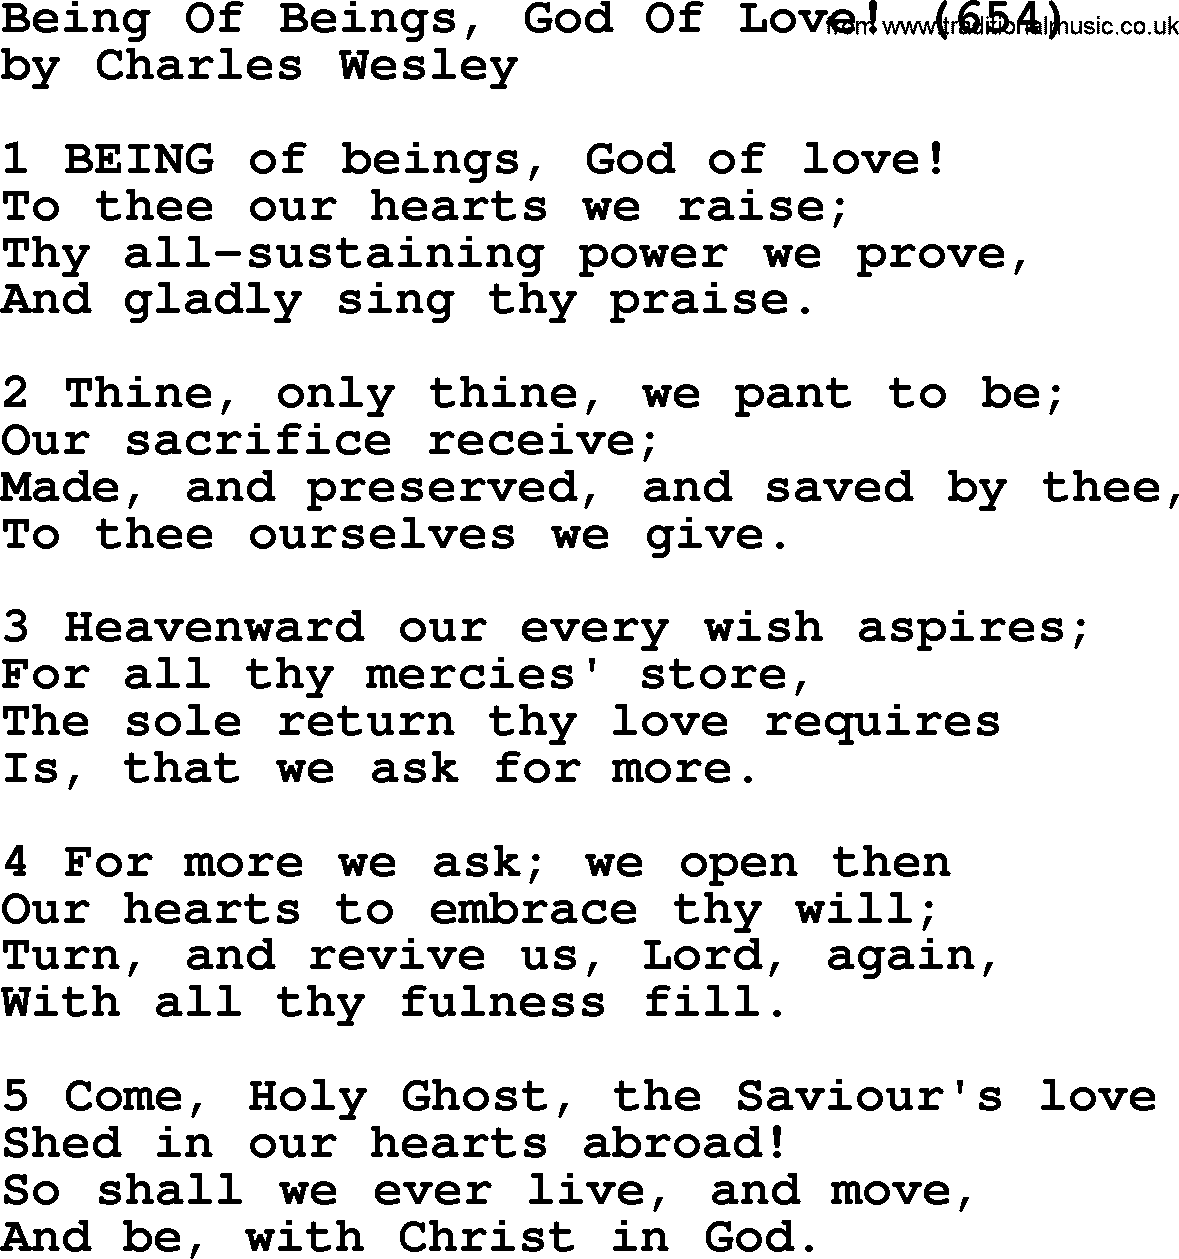 Charles Wesley hymn: Being Of Beings, God Of Love! (654), lyrics